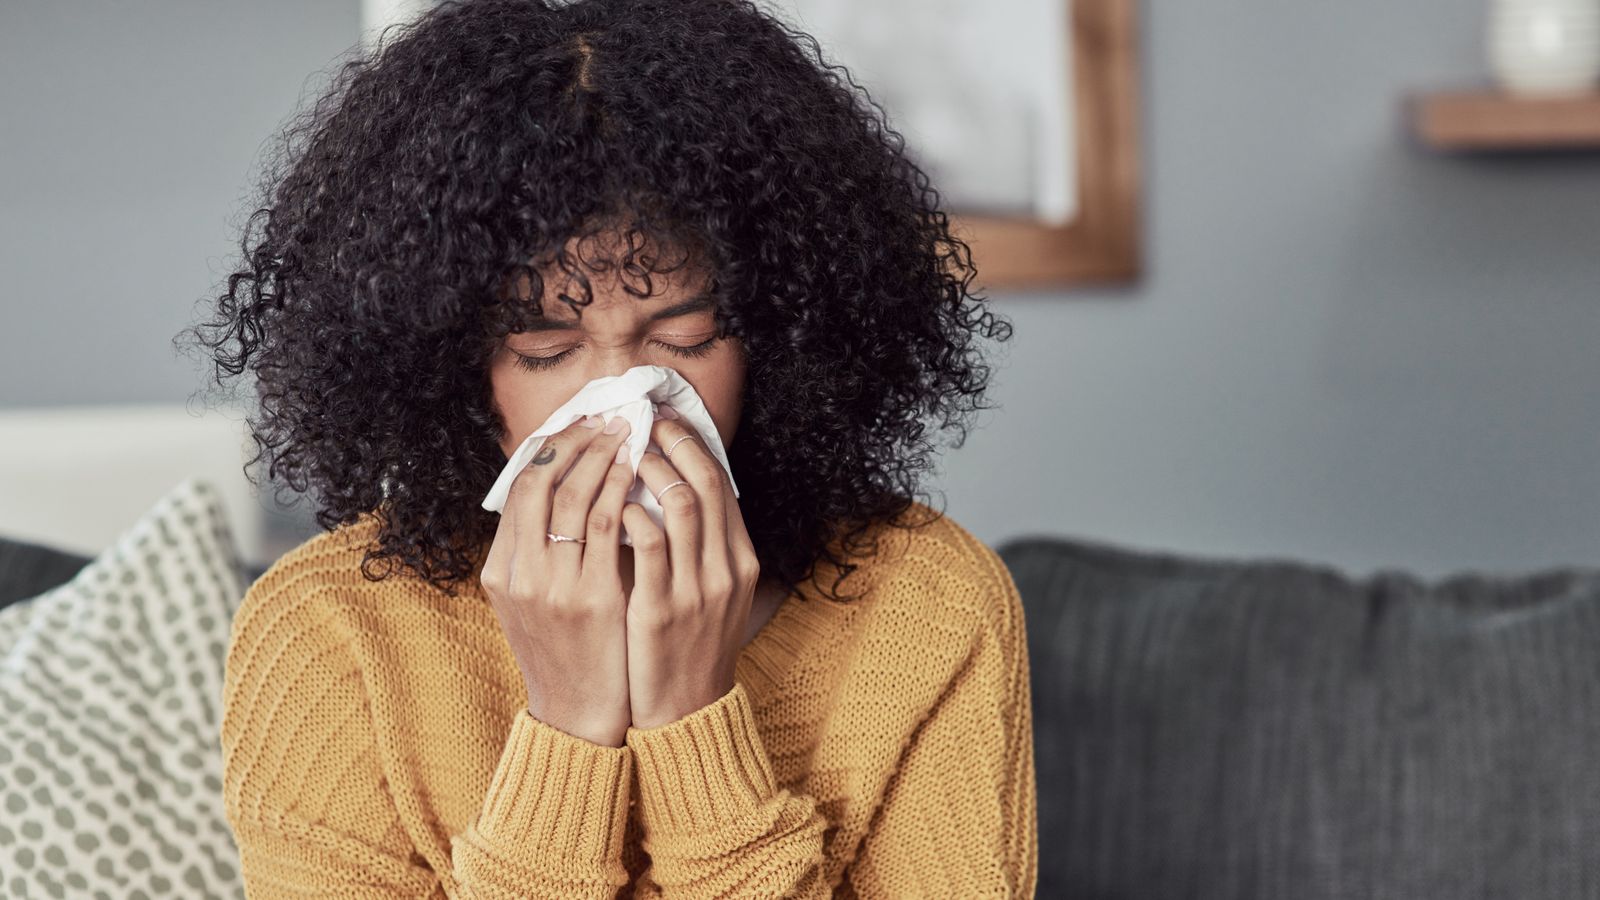 Често срещаните симптоми на продължителна настинка включват кашлица болки в